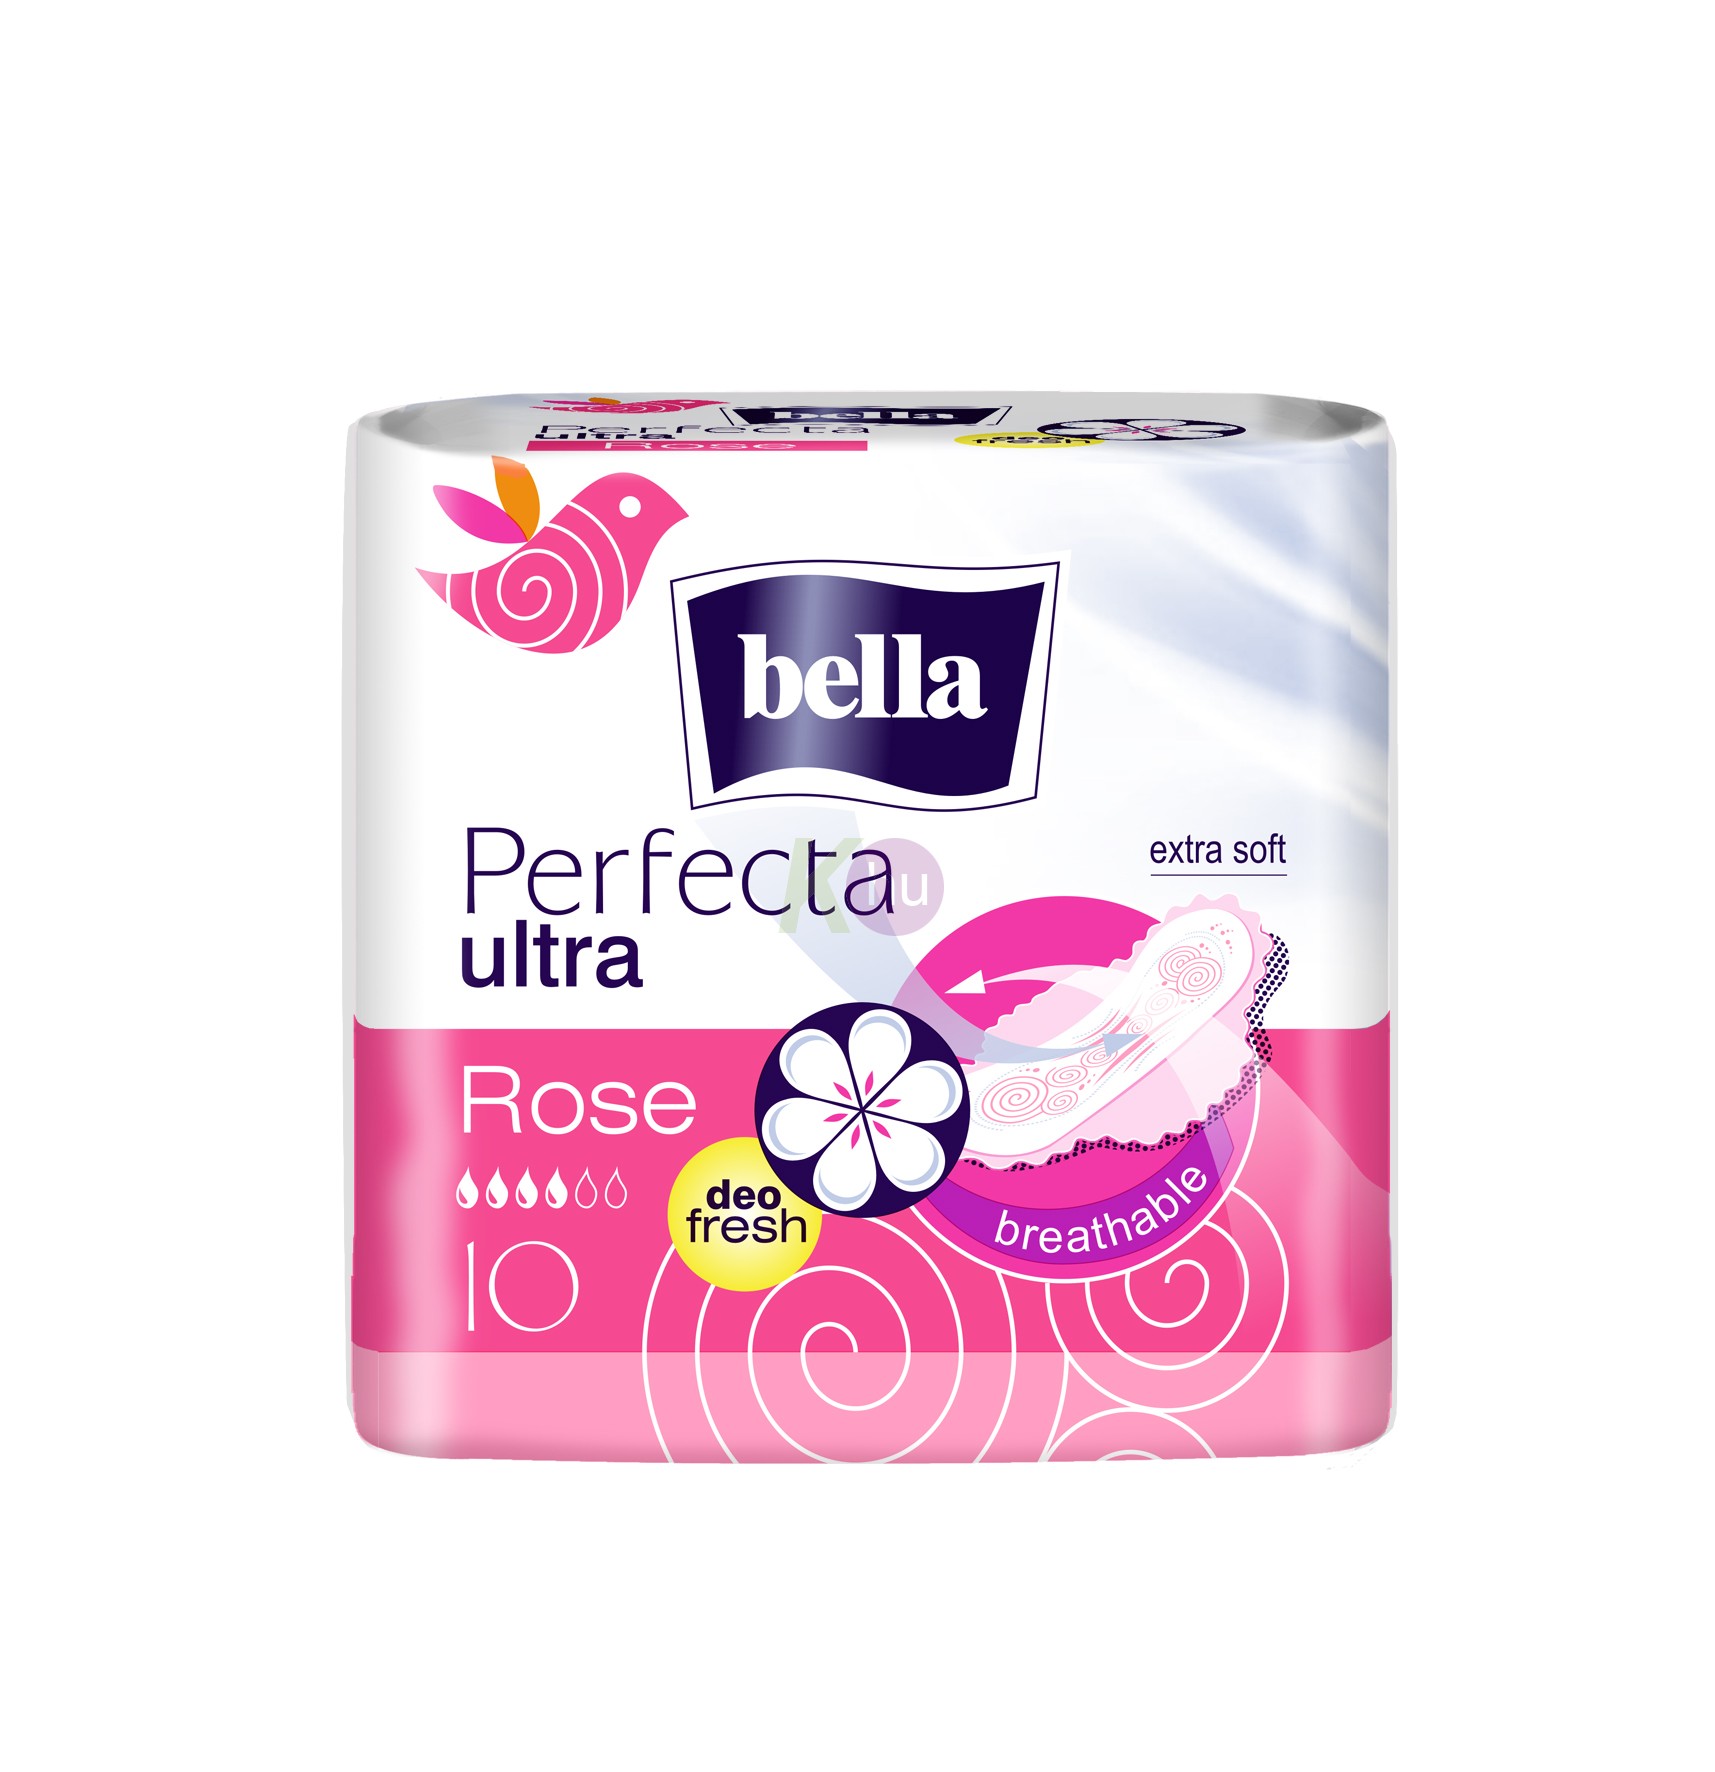 Bella perfecta rose deo 10db 32002502